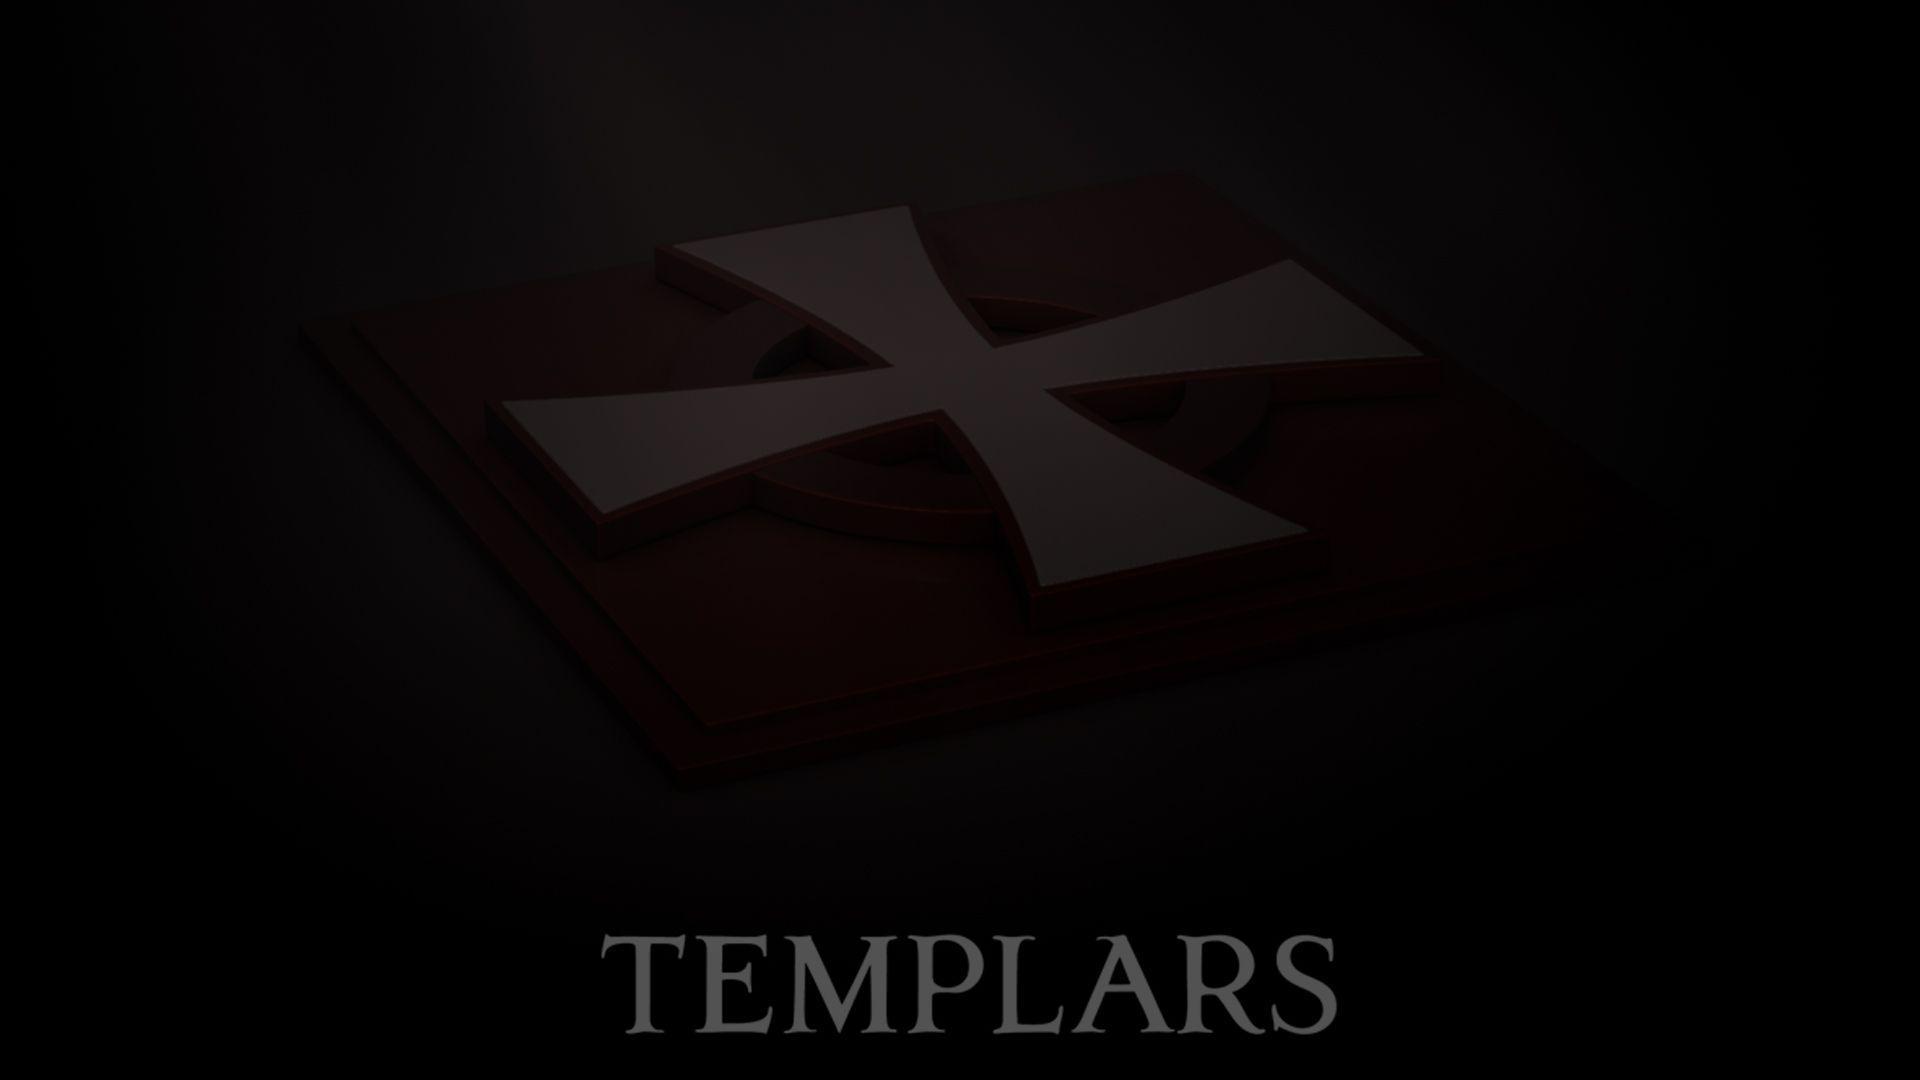 My Templar wallpaper. Secret World Forums